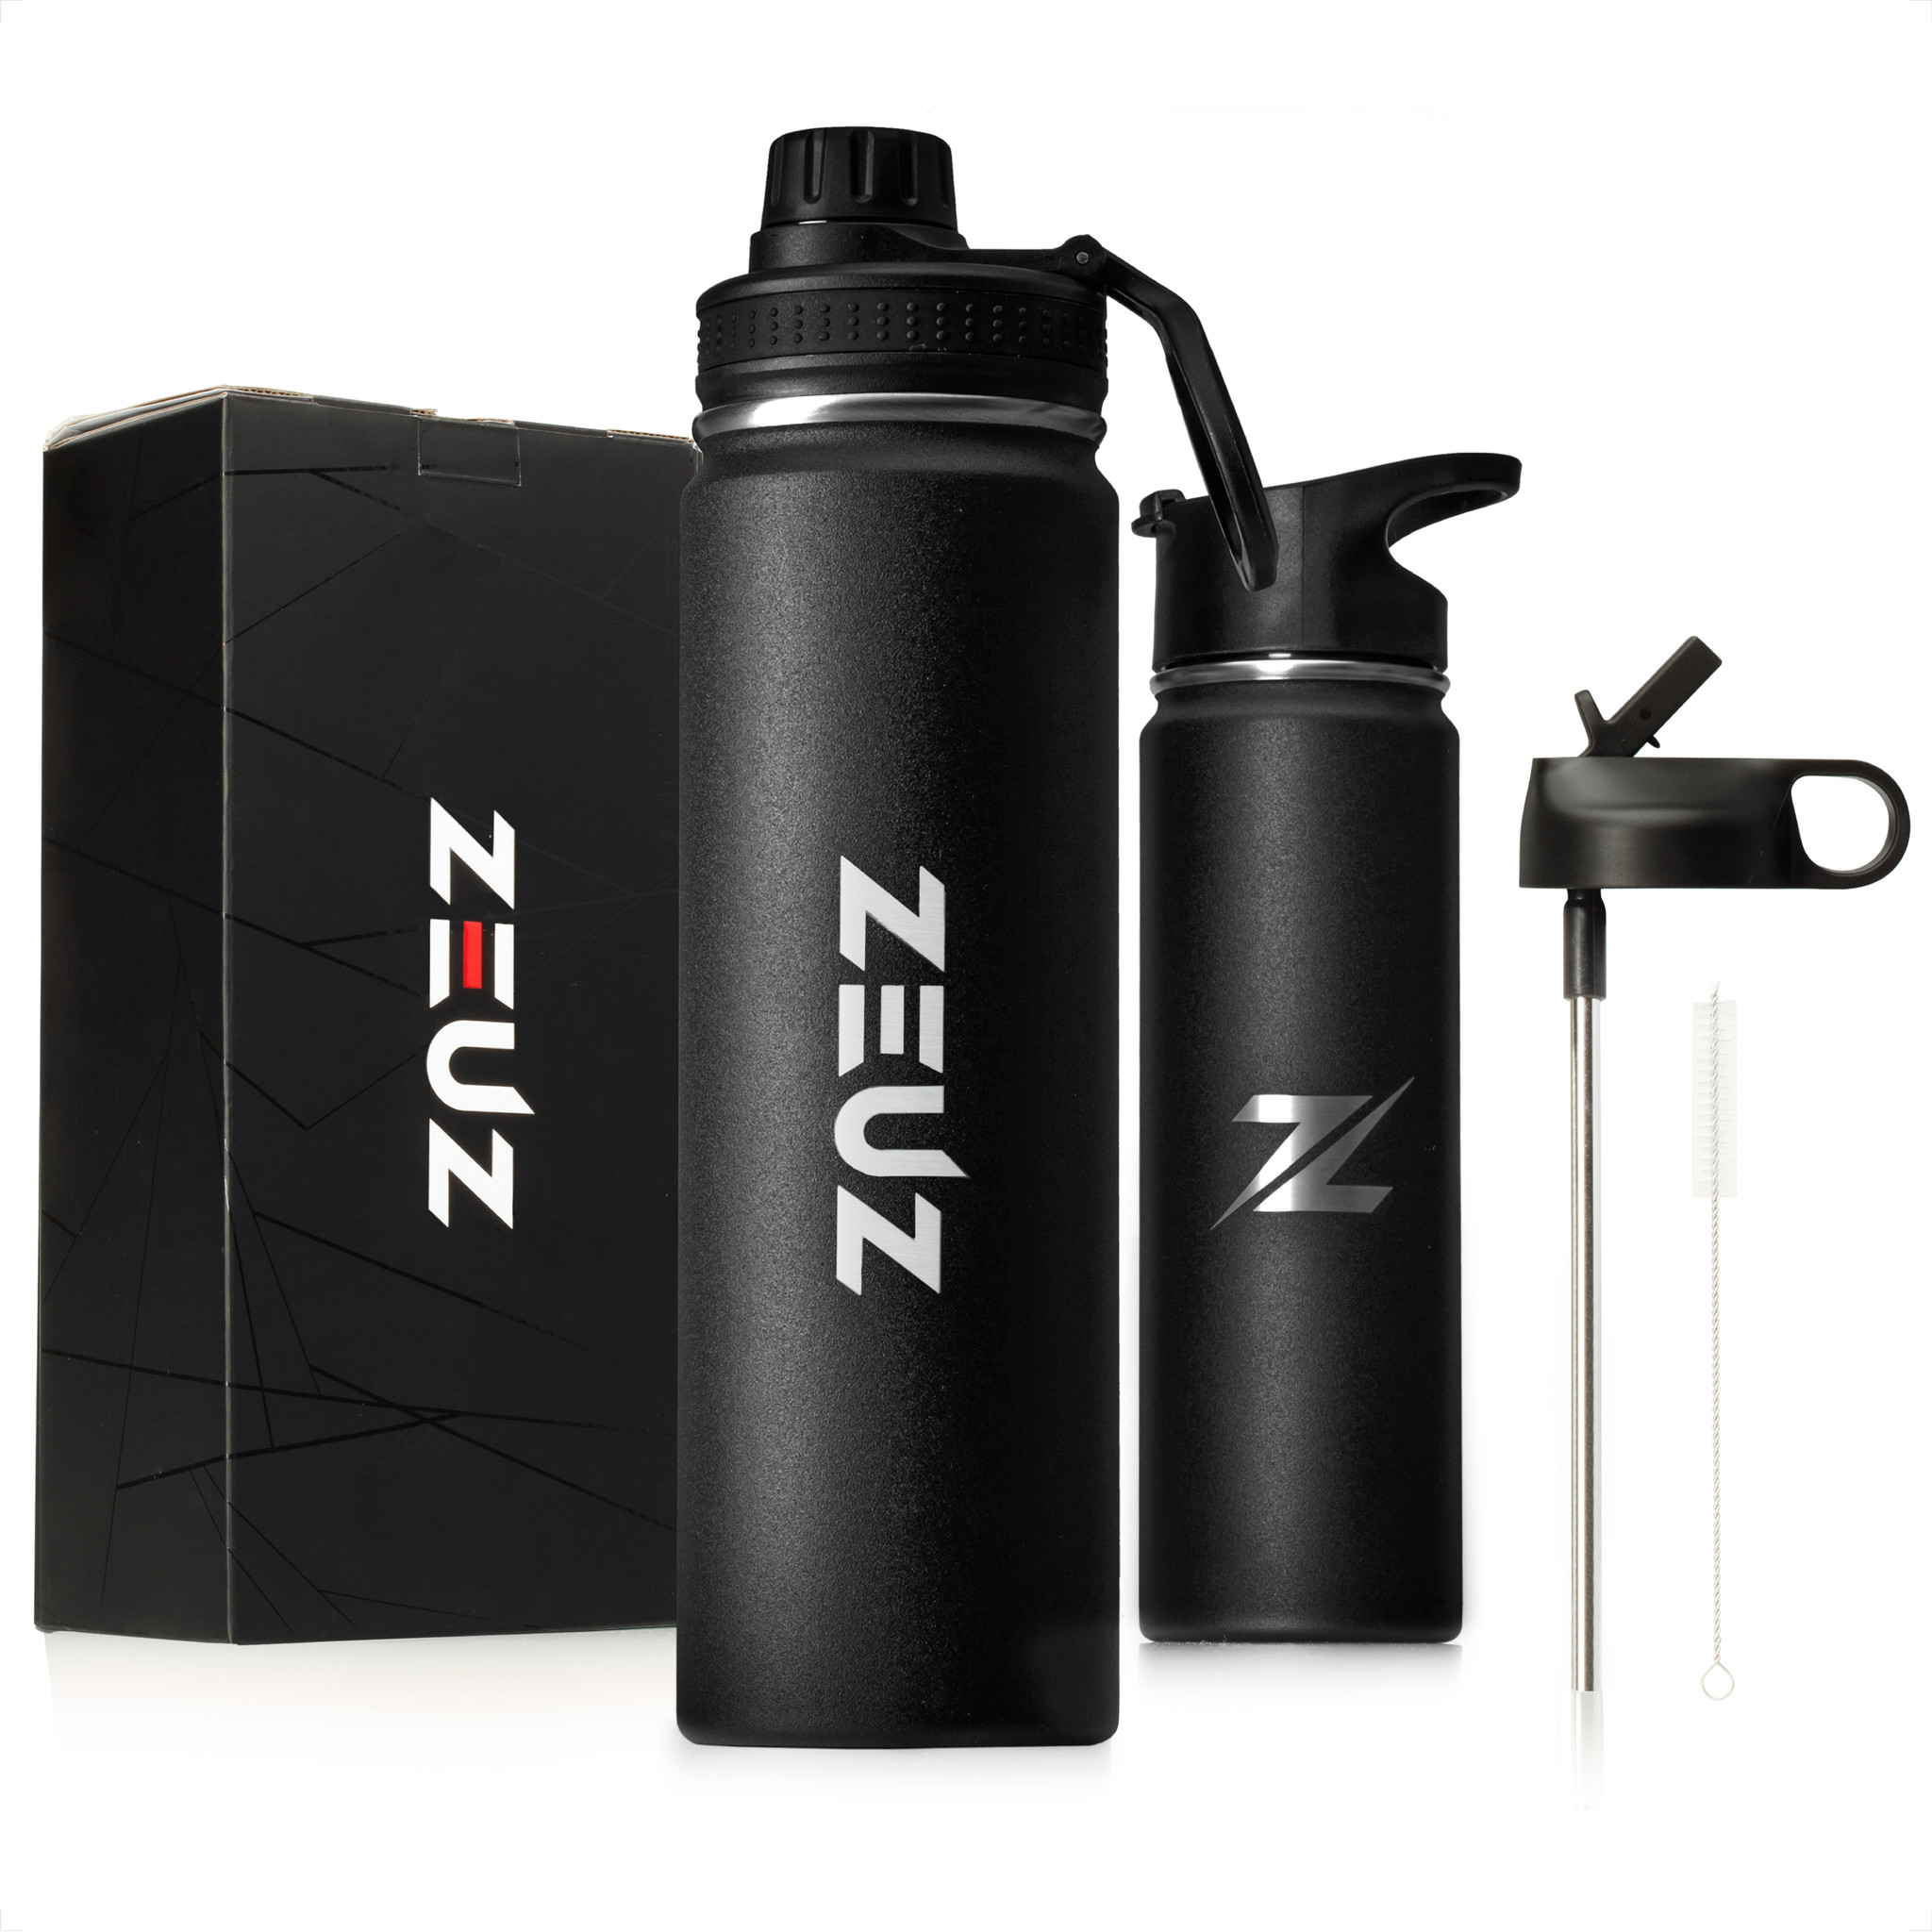 Deskundige stap verstoring ZEUZ® Premium RVS Thermosfles & Drinkfles– Waterfles met Rietje - BPA Vrij  – 700 ml - Mat Zwart - ZEUZ